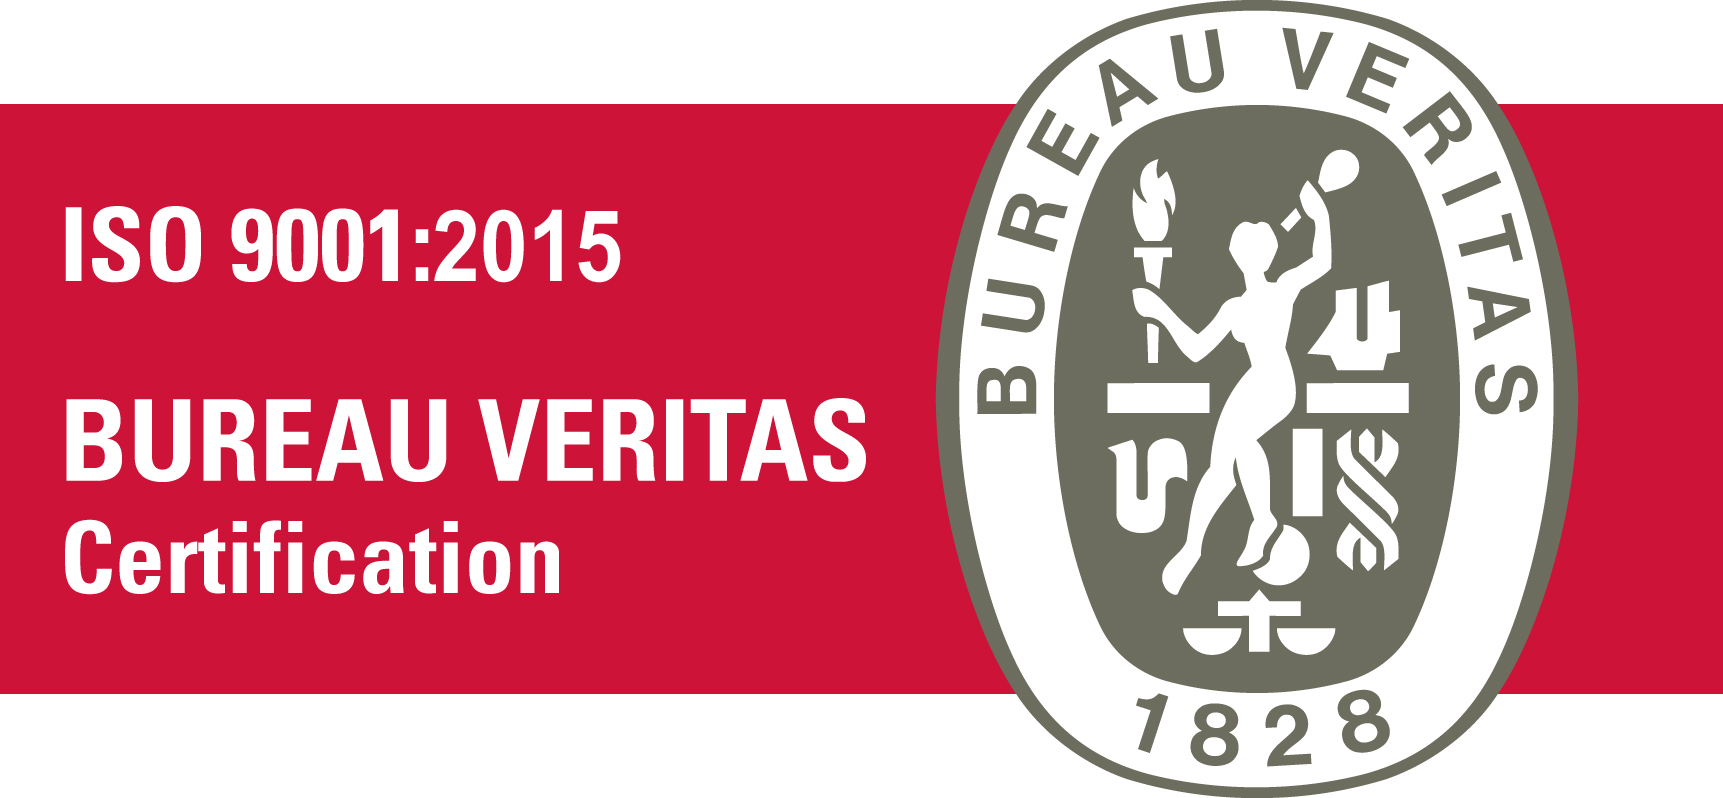 BV Certification ISO 9001 2015